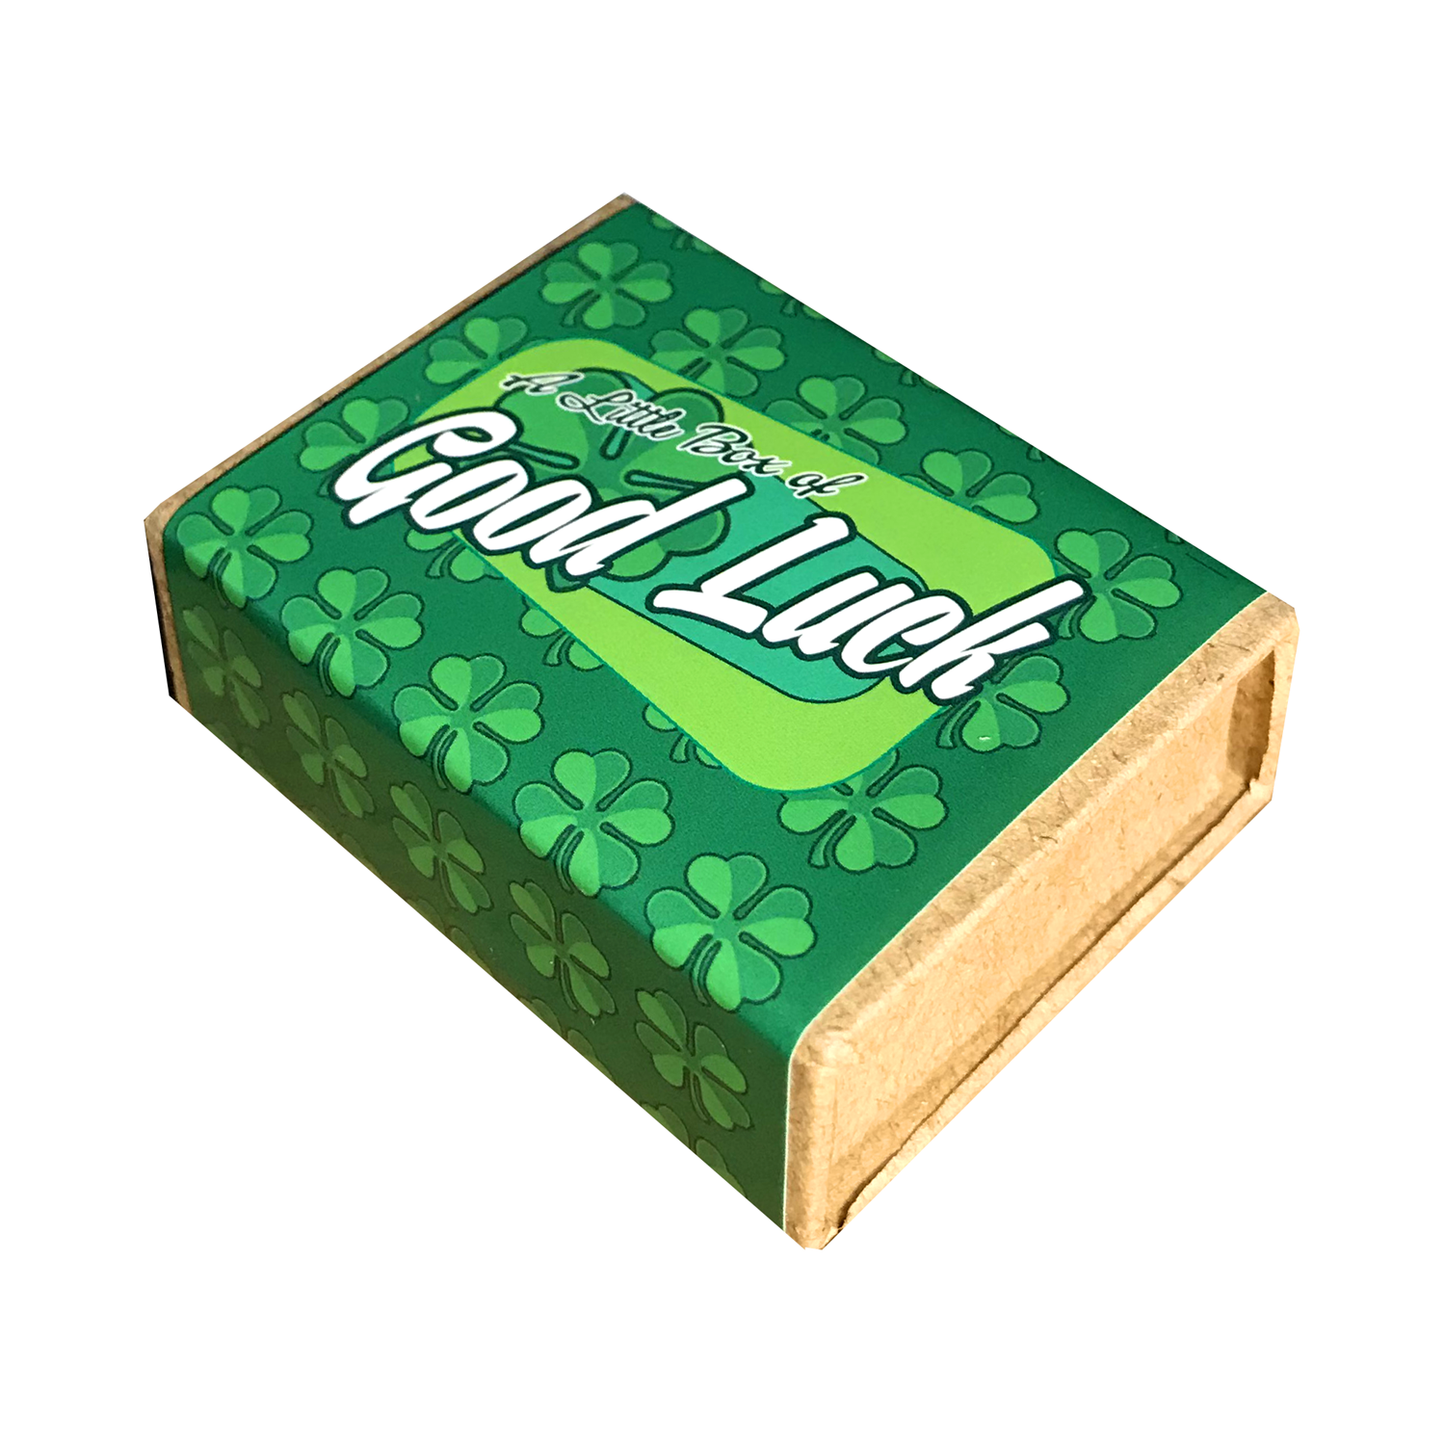 A little box of good luck